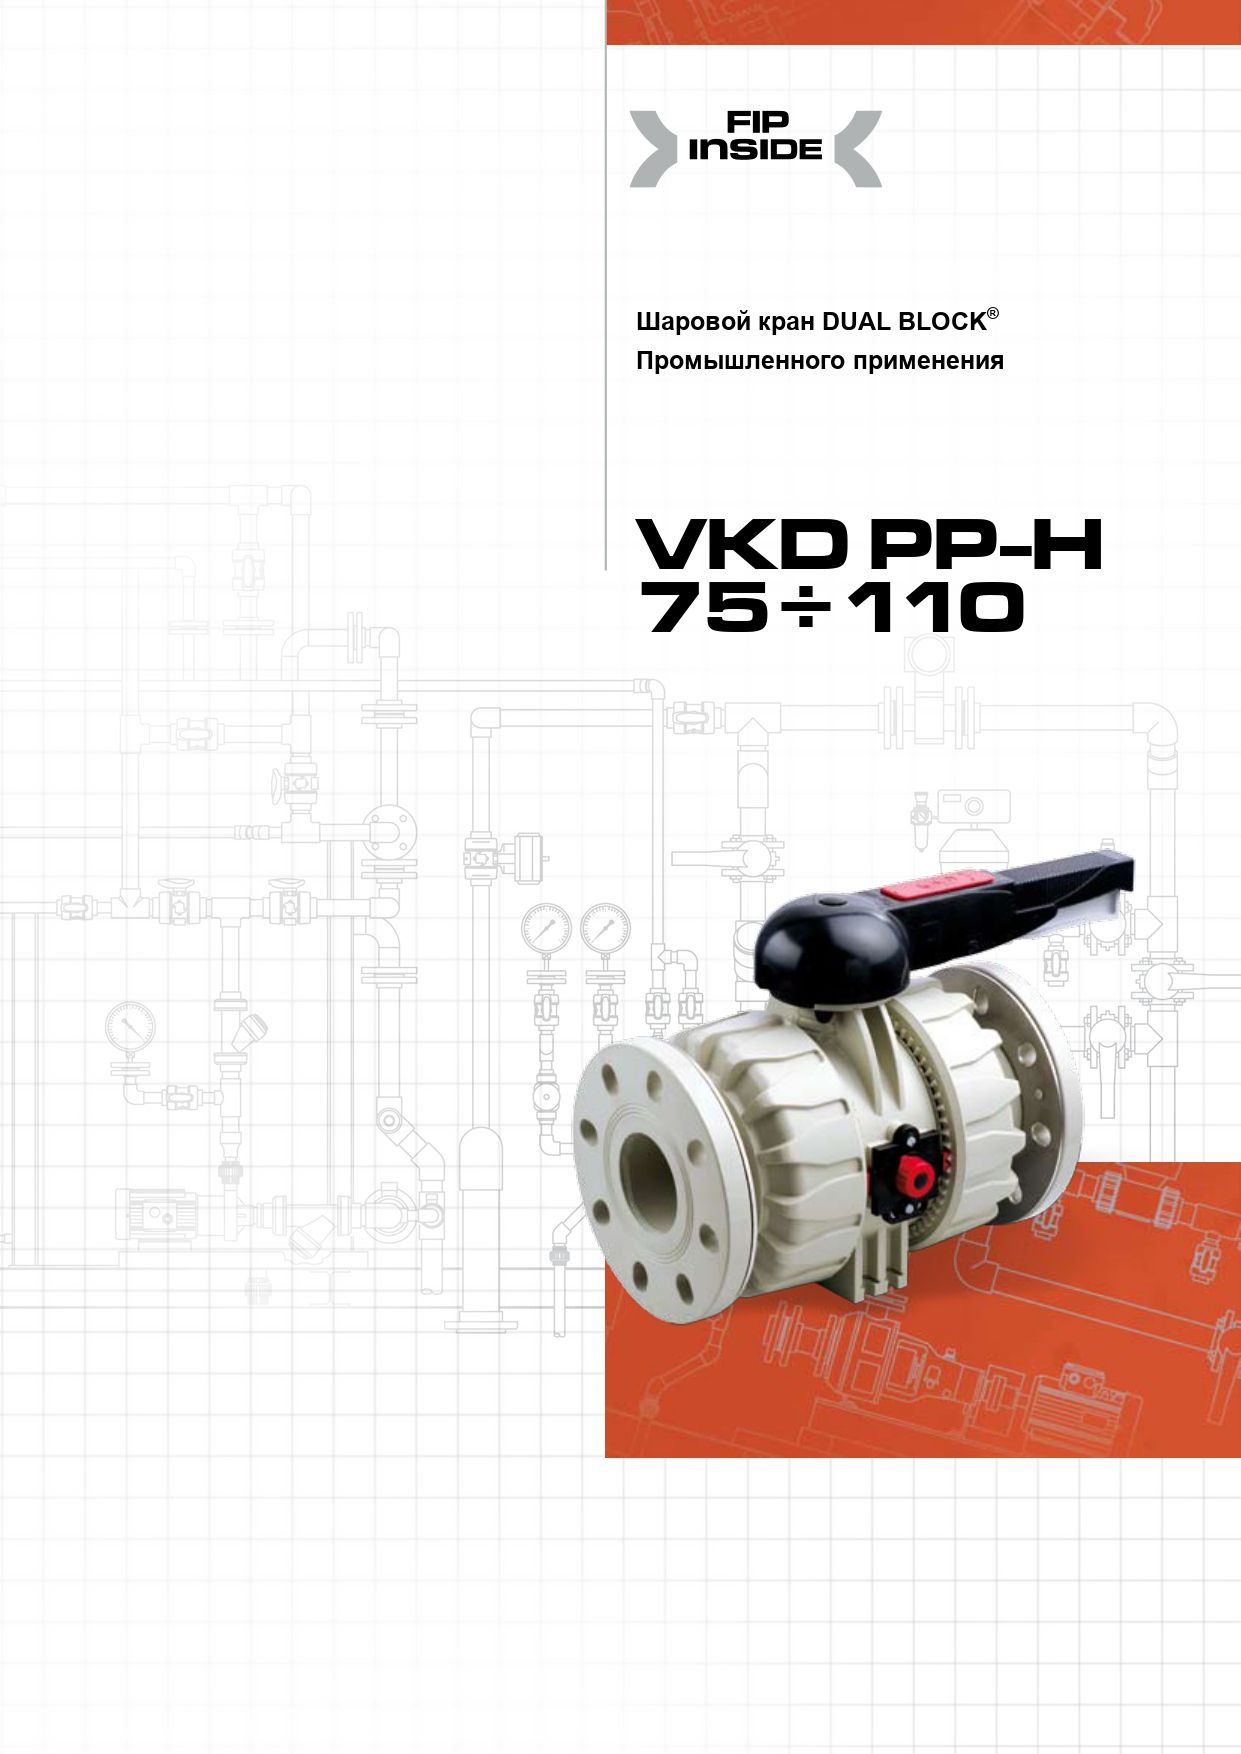 Шаровые краны VKD DN65-100 из ПП